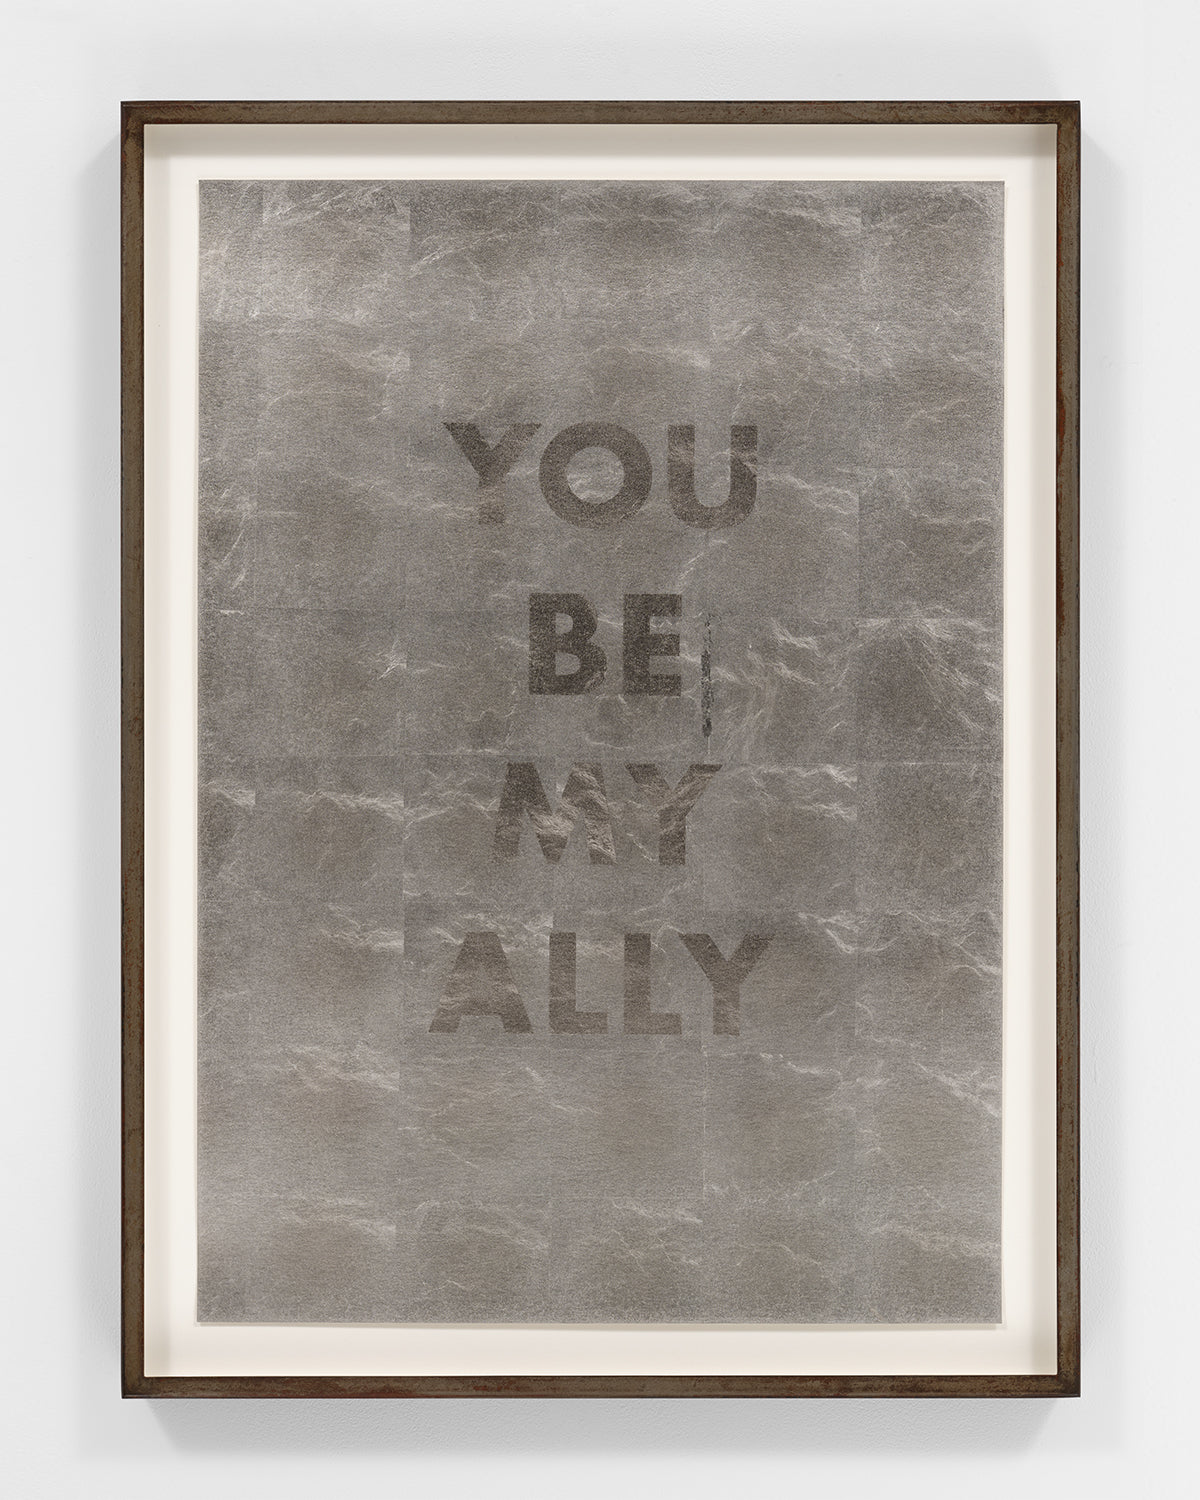 Jenny Holzer: MY ALLY